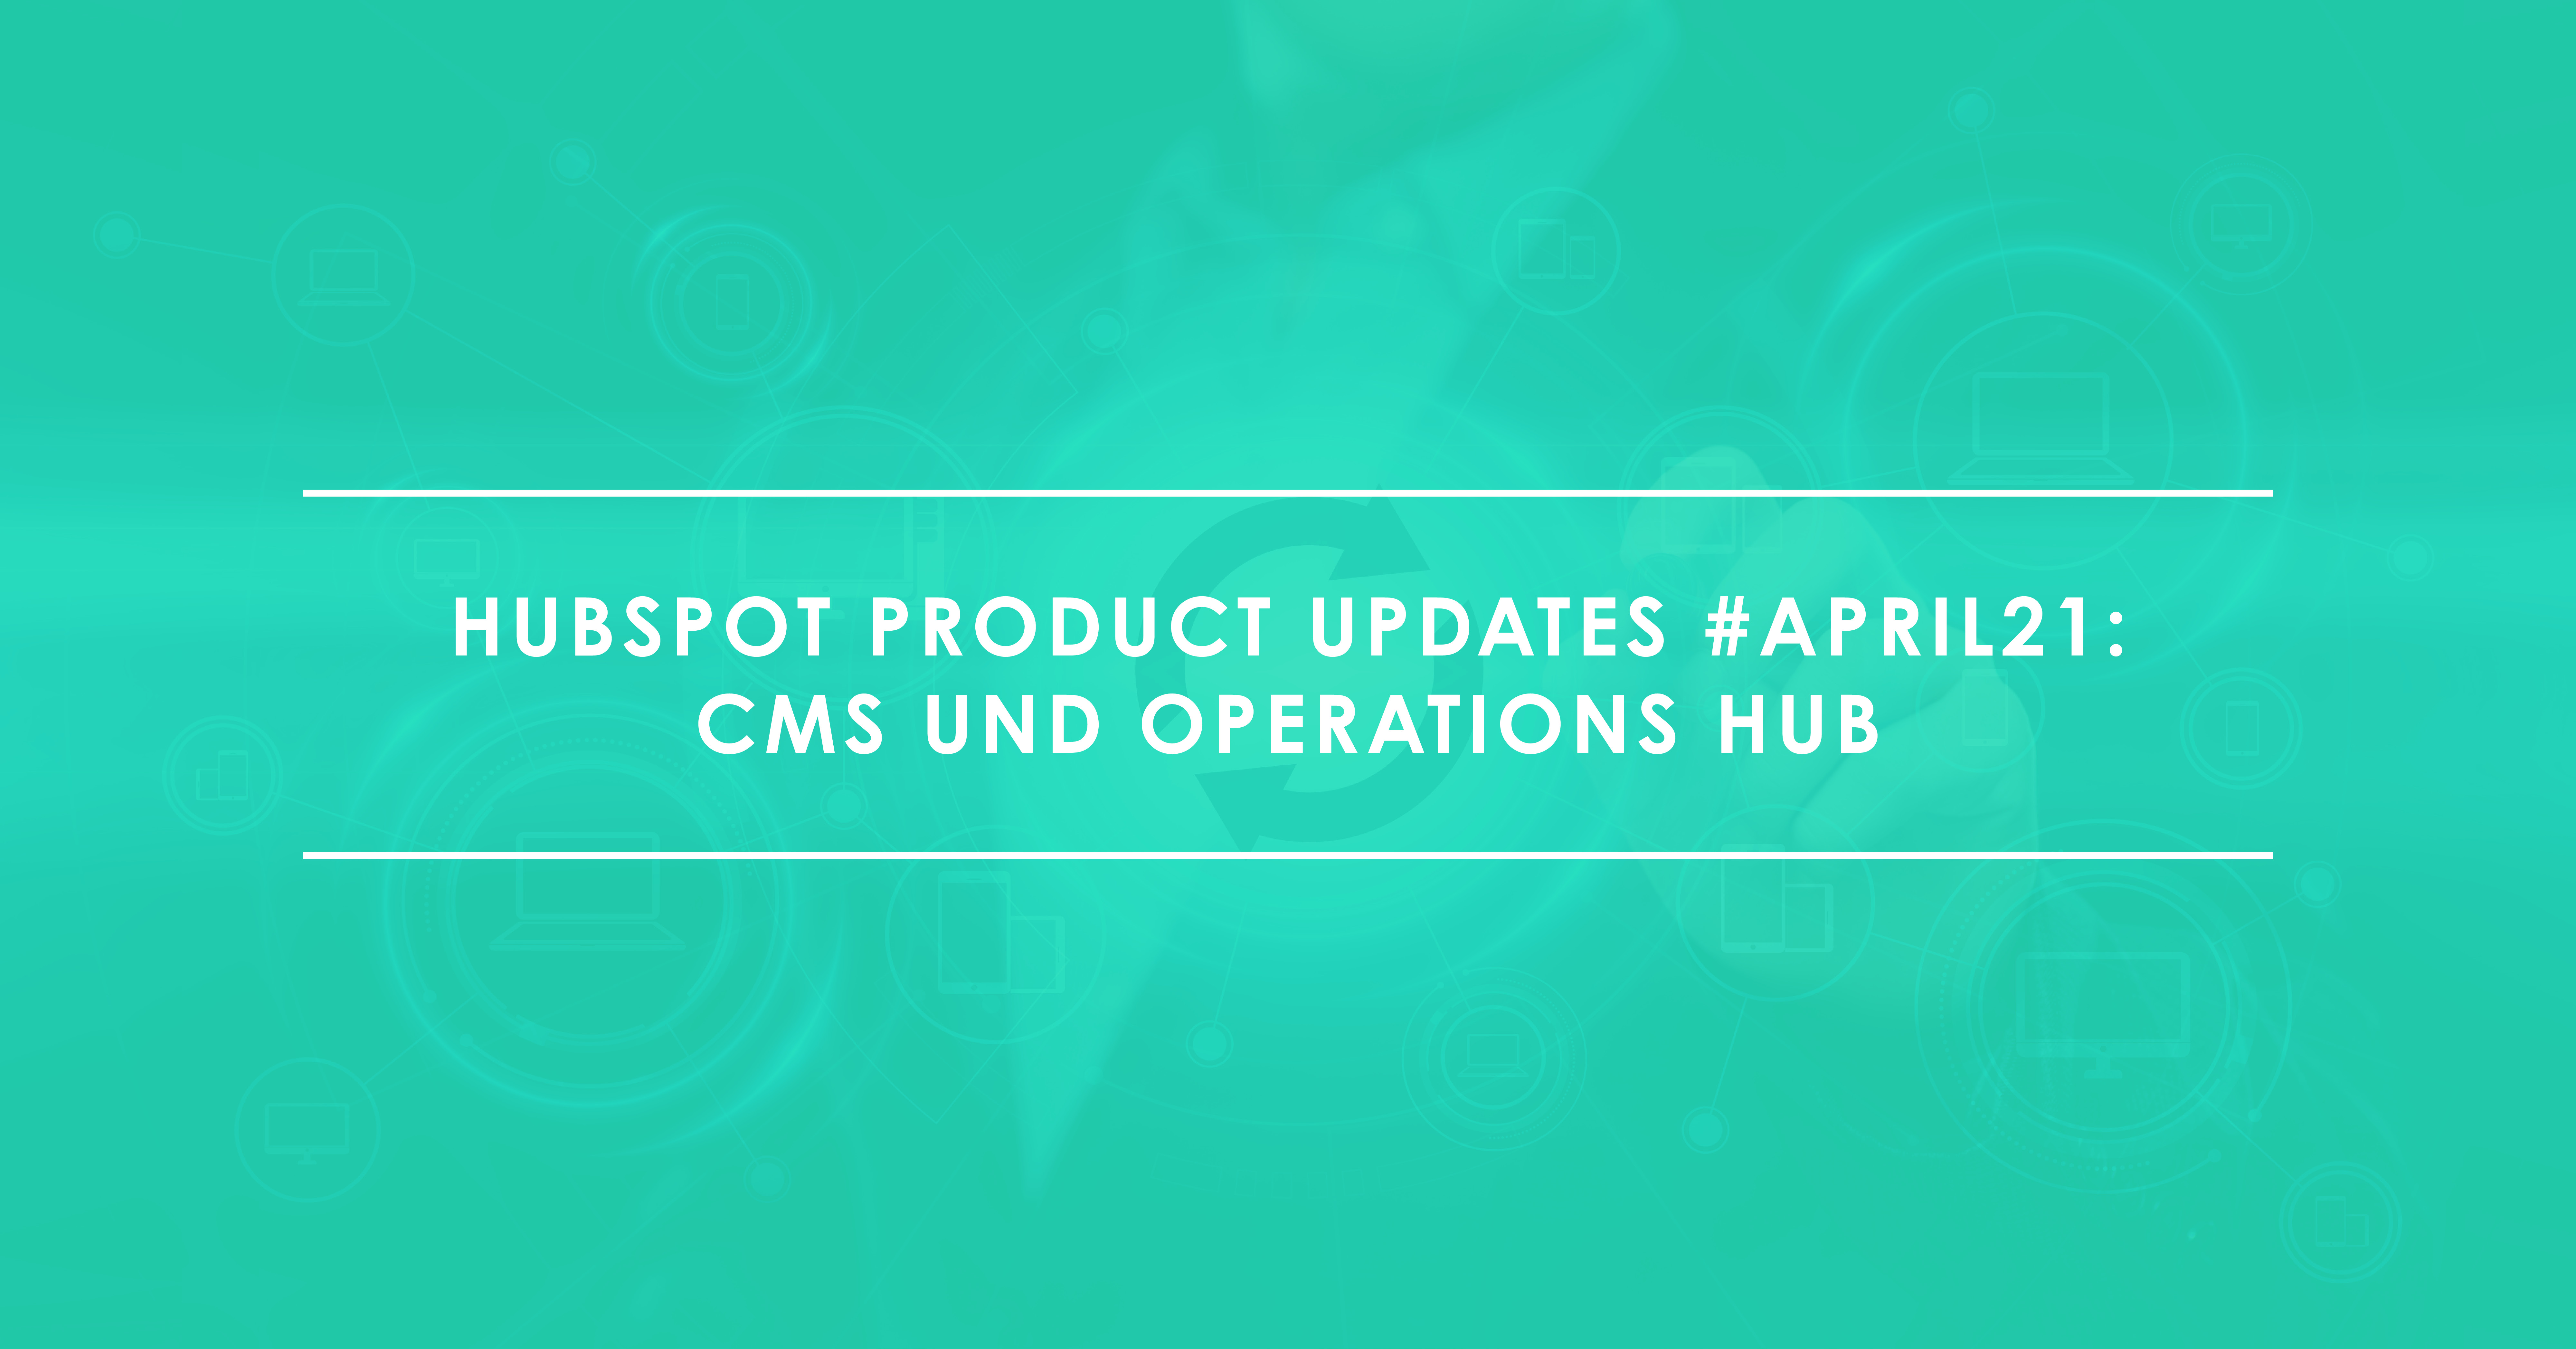 HubSpot Product Updates CMS Operations Hub April